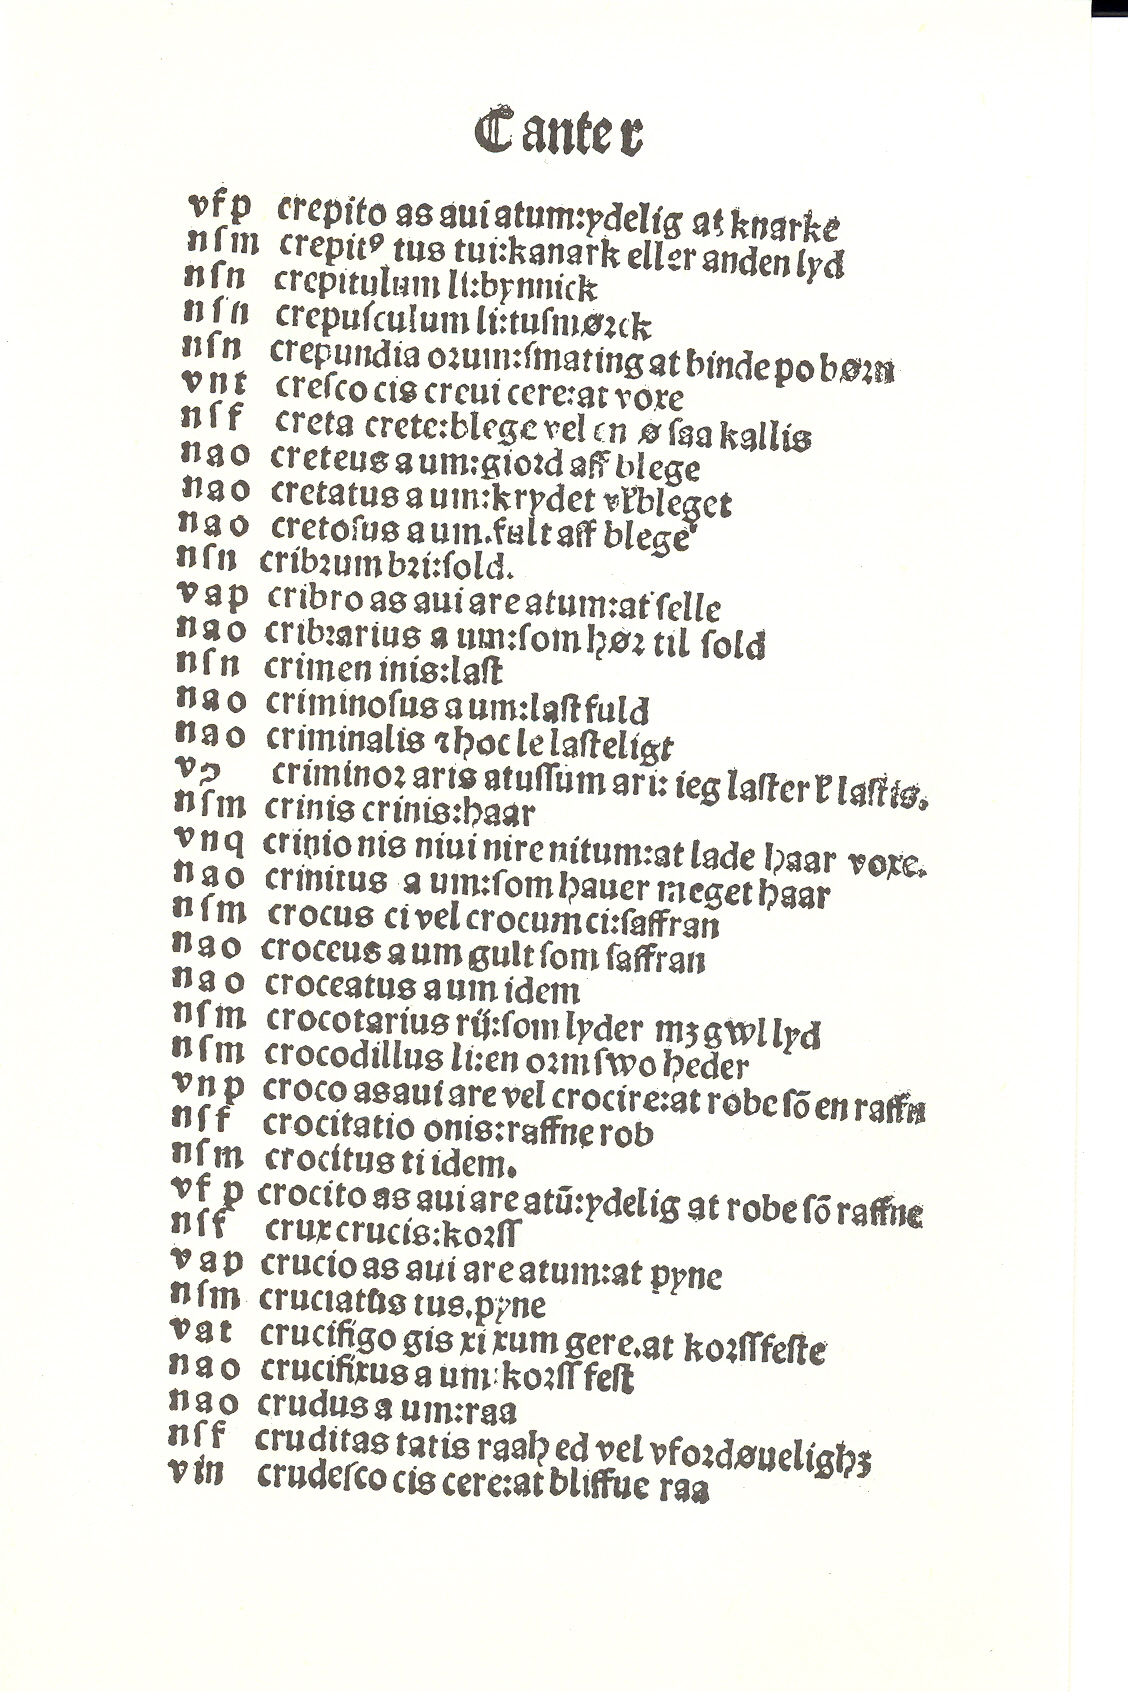 Pedersen 1510, Side: 74